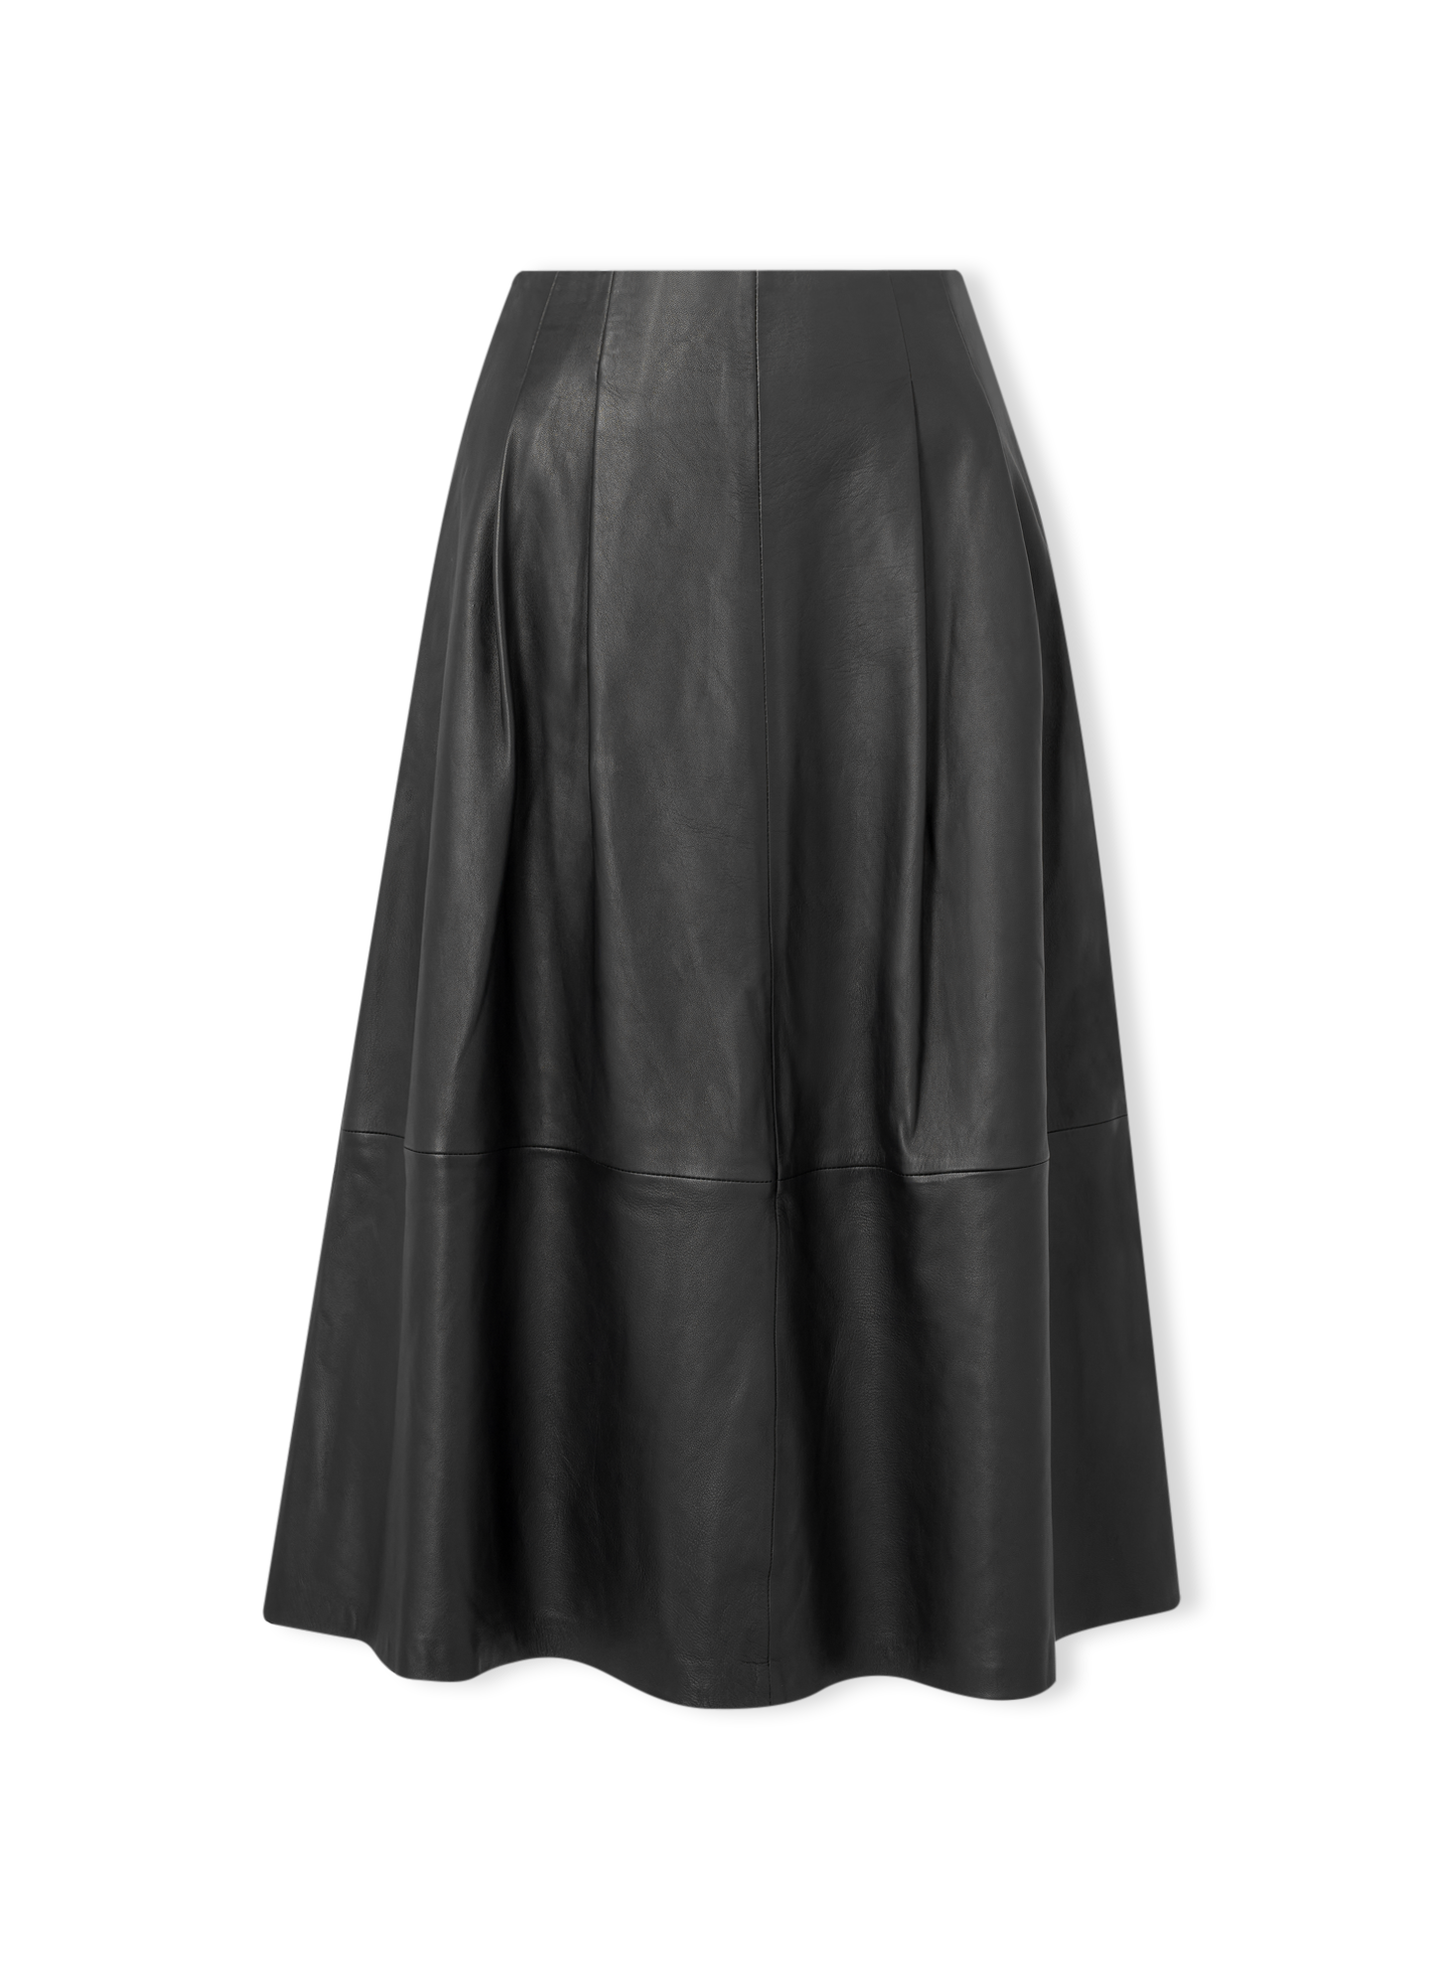 Full leather skirt, €795, LK Bennett